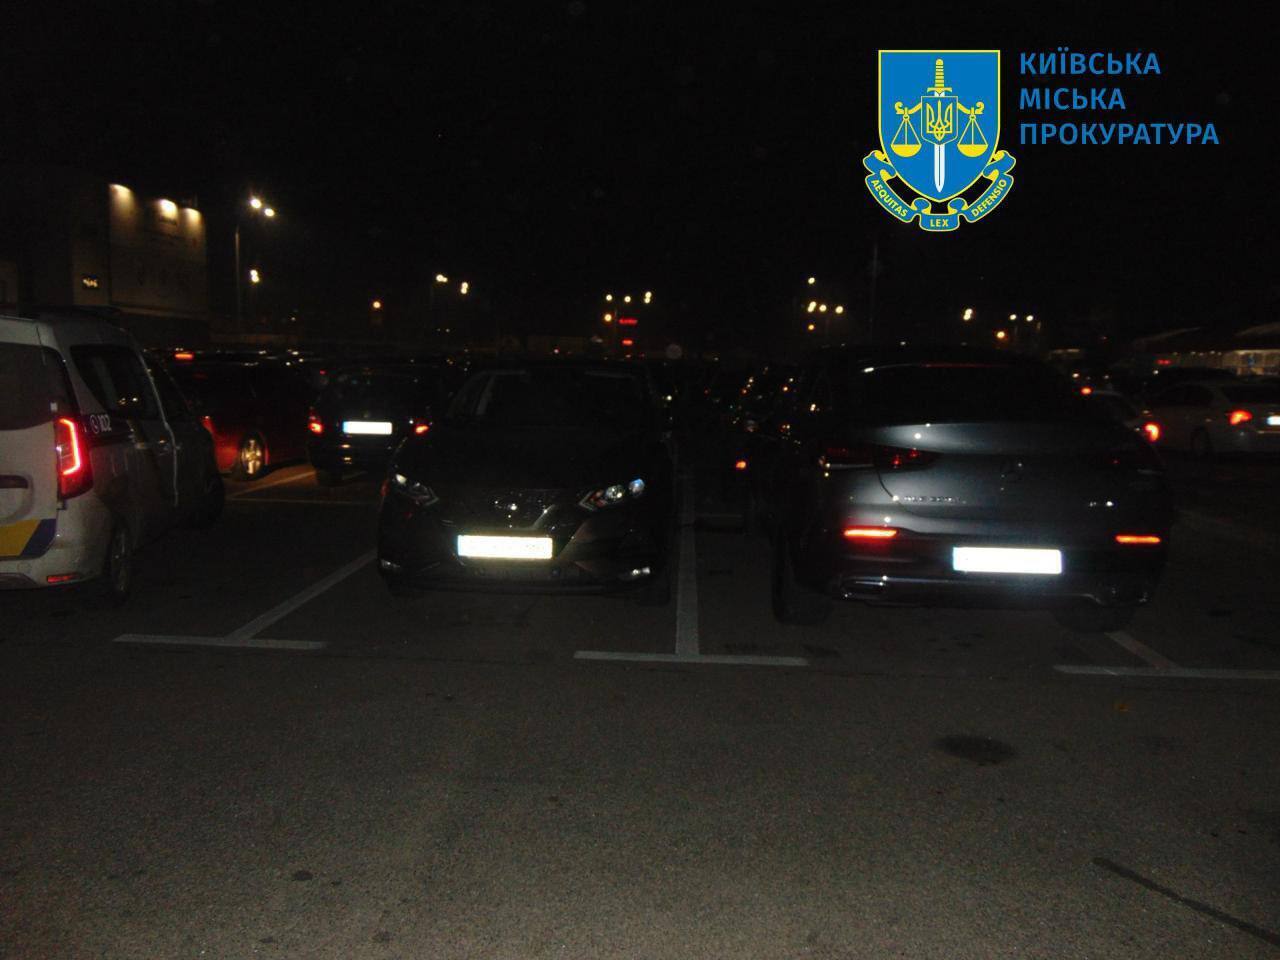 У Києві двоє чоловіків побили власника та намагались викрасти авто з парковки, аби продати і втекти за кордон